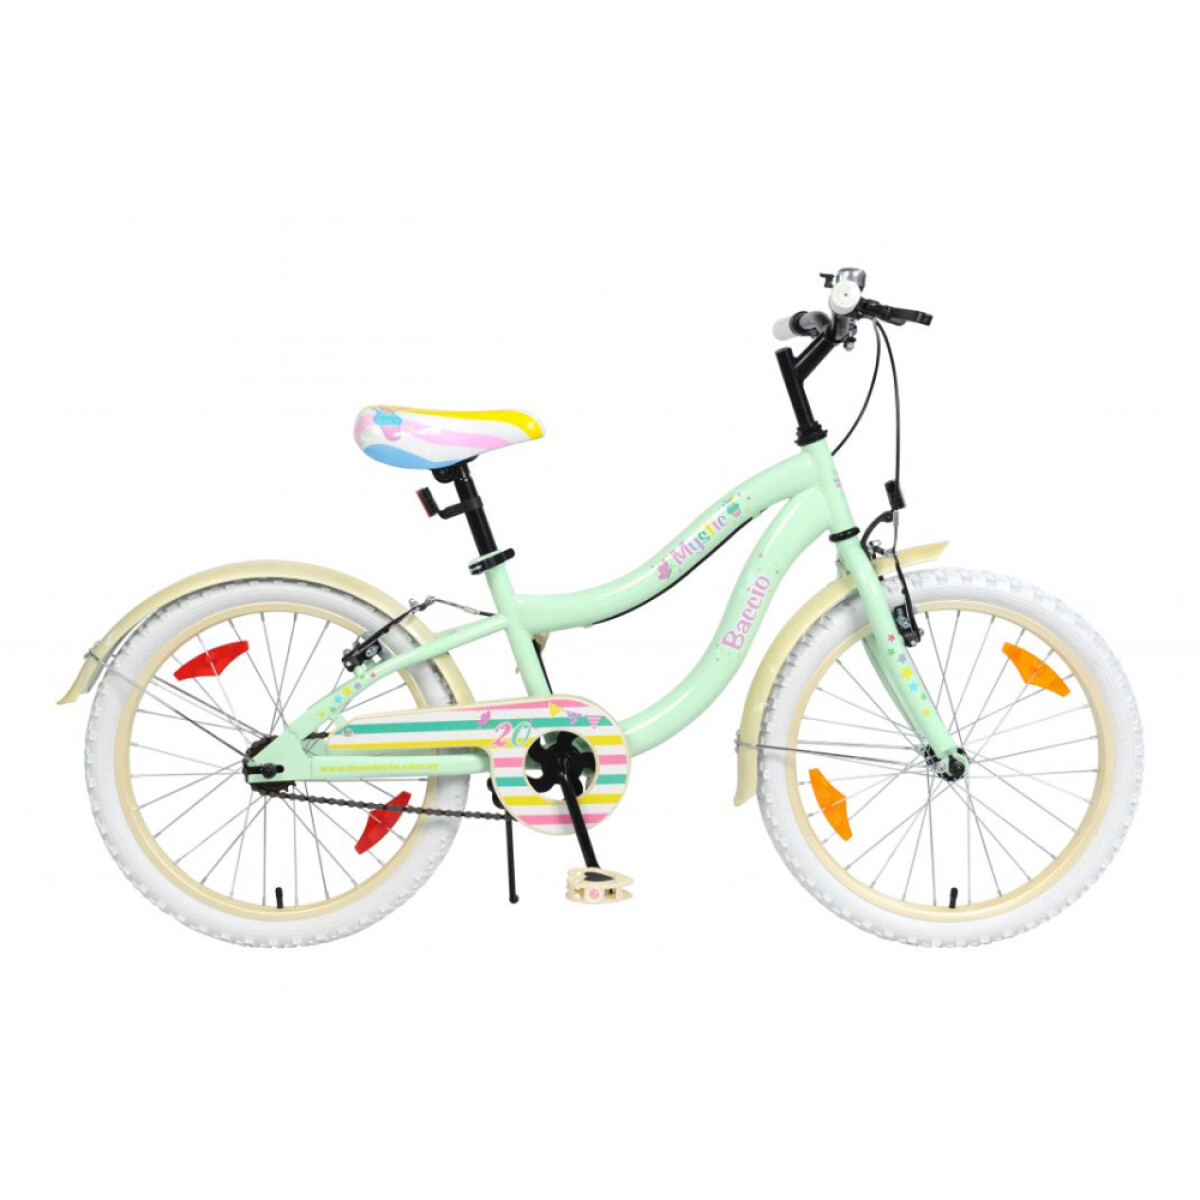 Bicicleta Baccio Mystic rodado 20 - Verde 